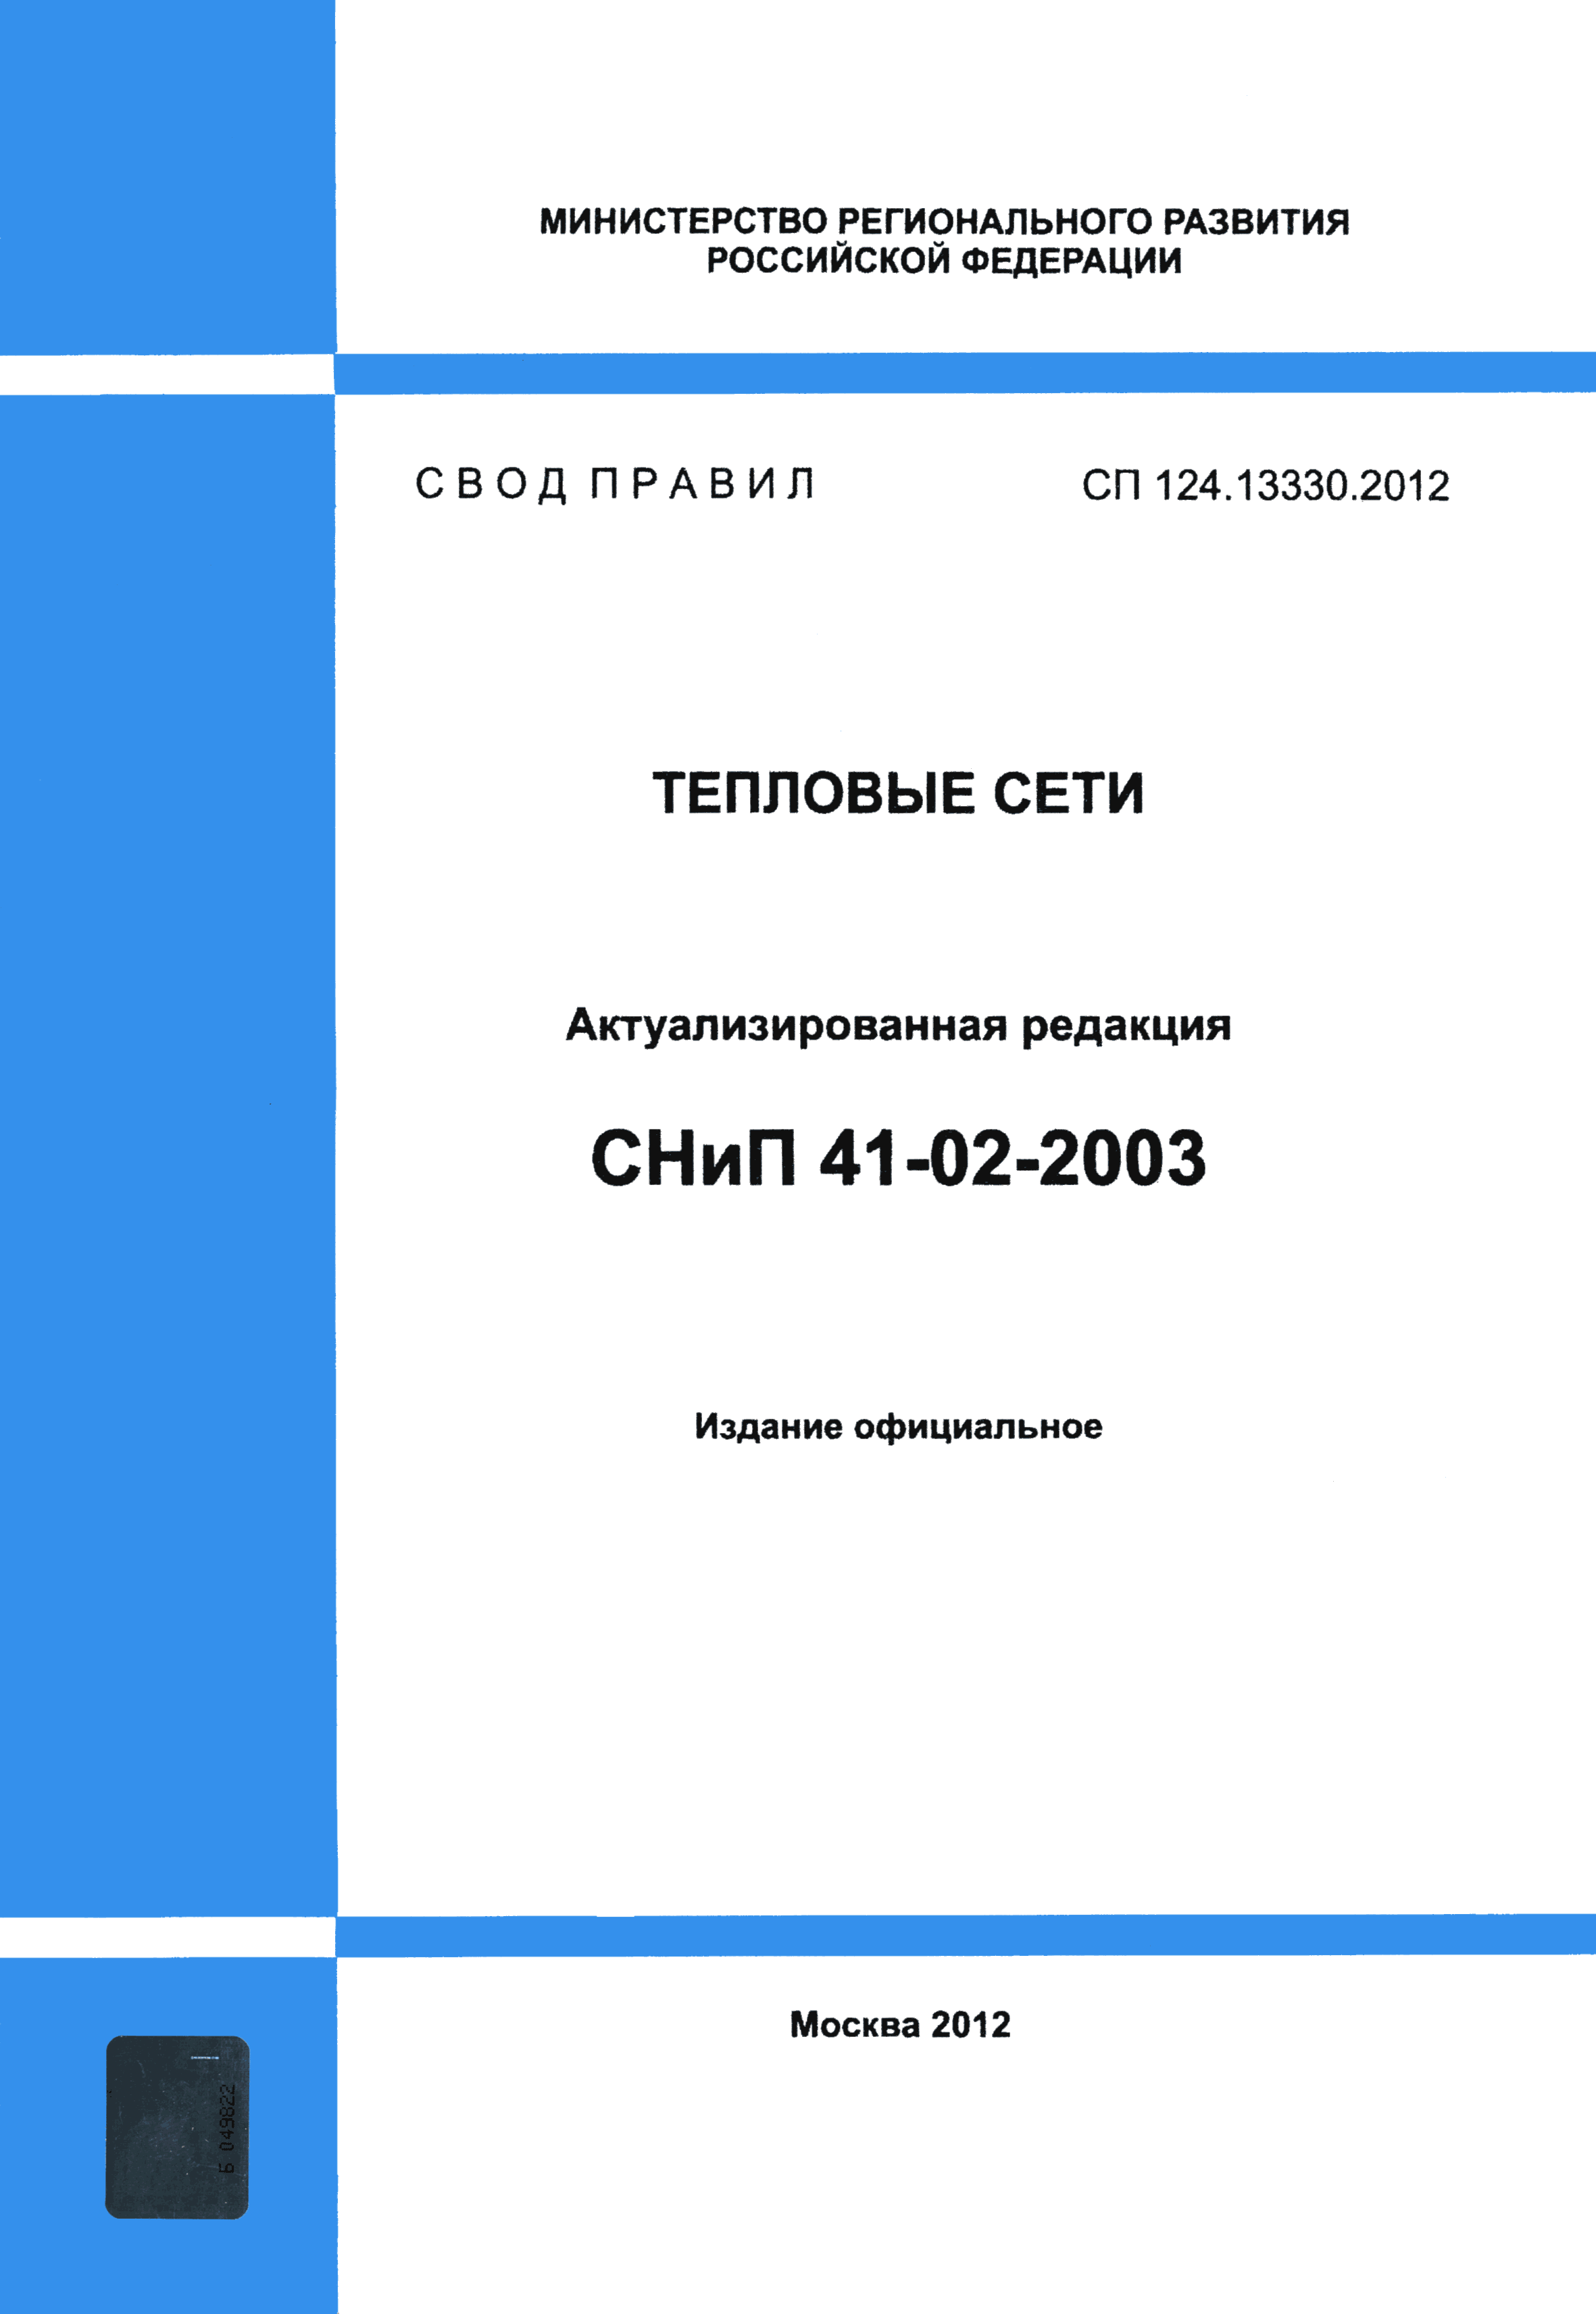 СП 124.13330.2012